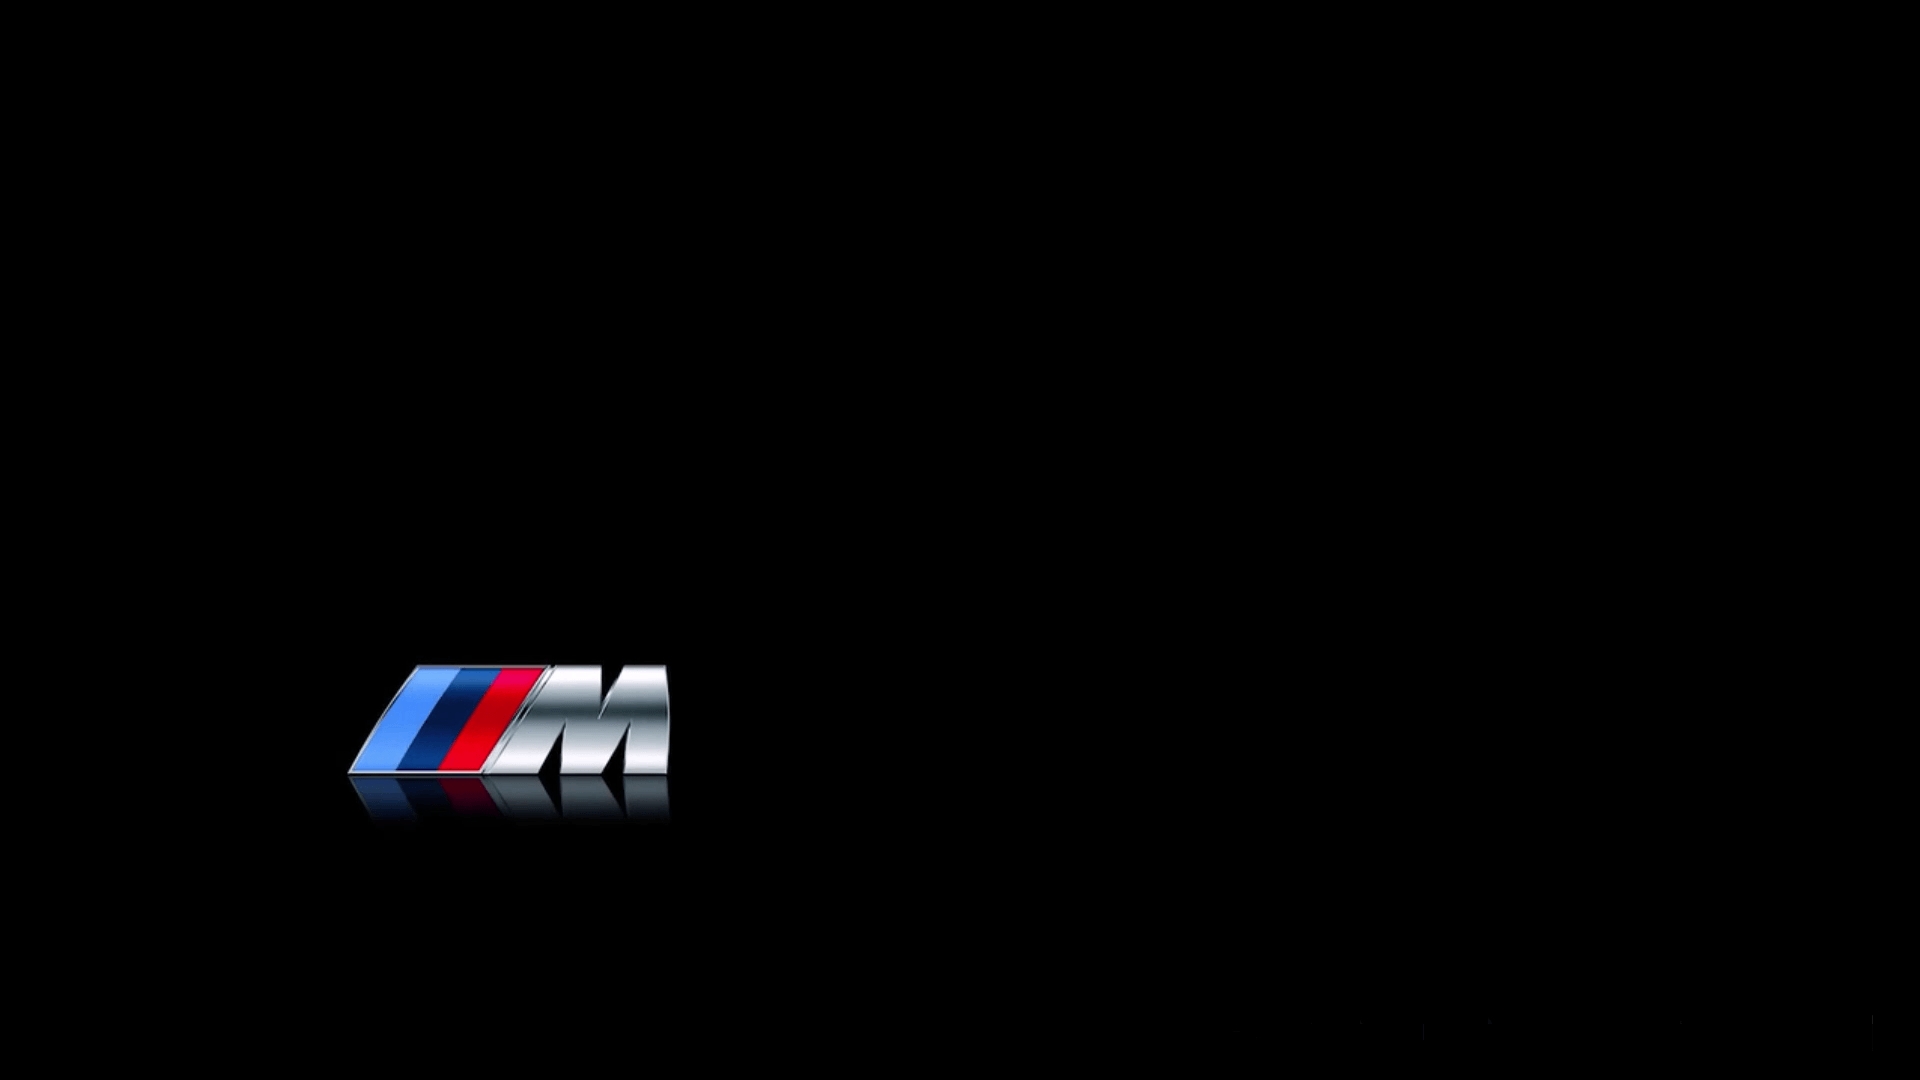 Bmw m power. BMW m3 logo. BMW MPOWER.